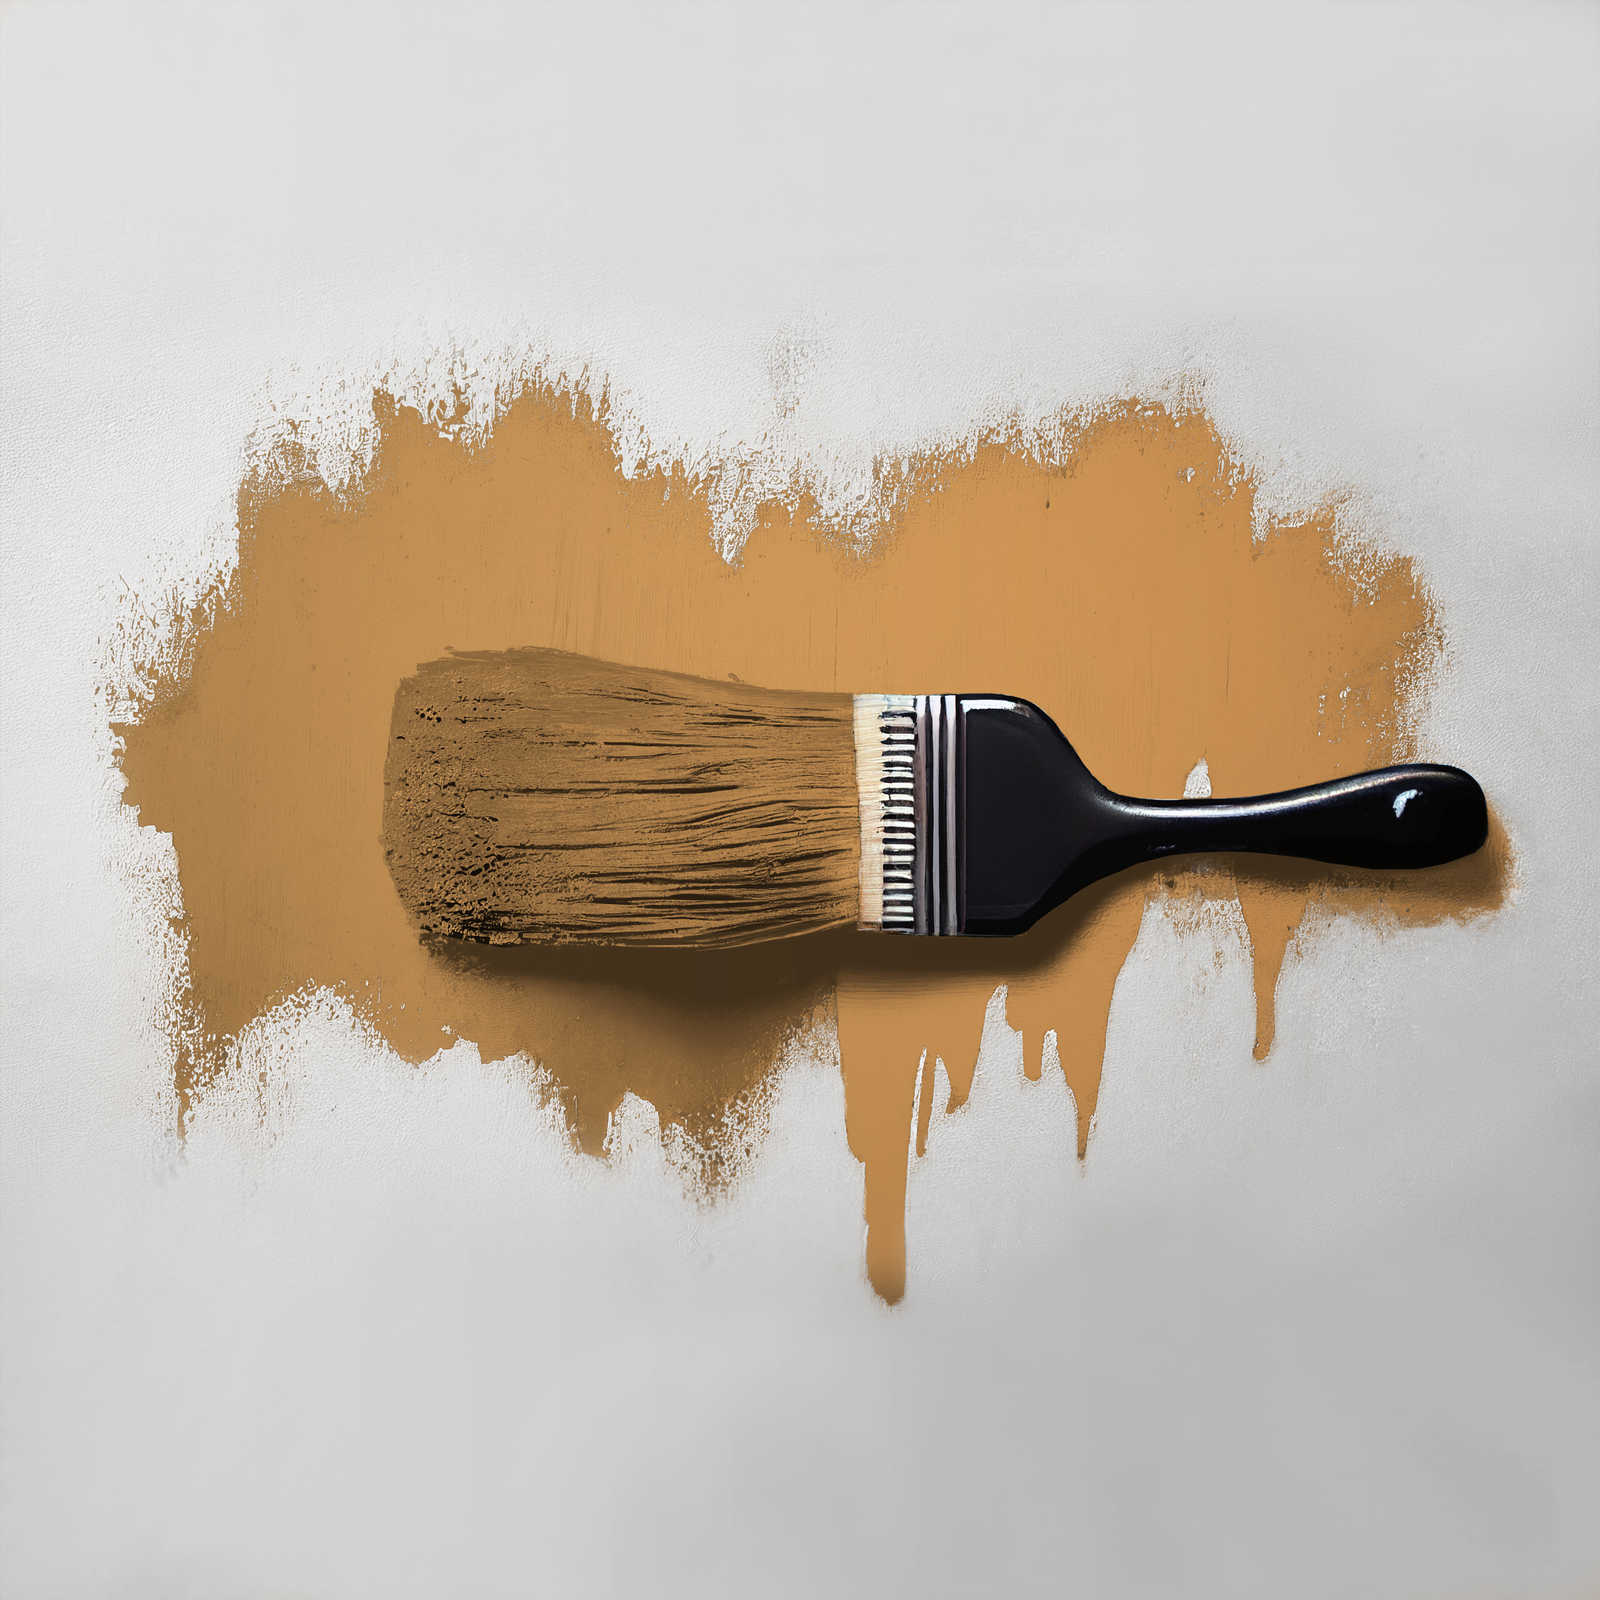             Wall Paint TCK5007 »Salted Caramel« in intense caramel – 2.5 litre
        